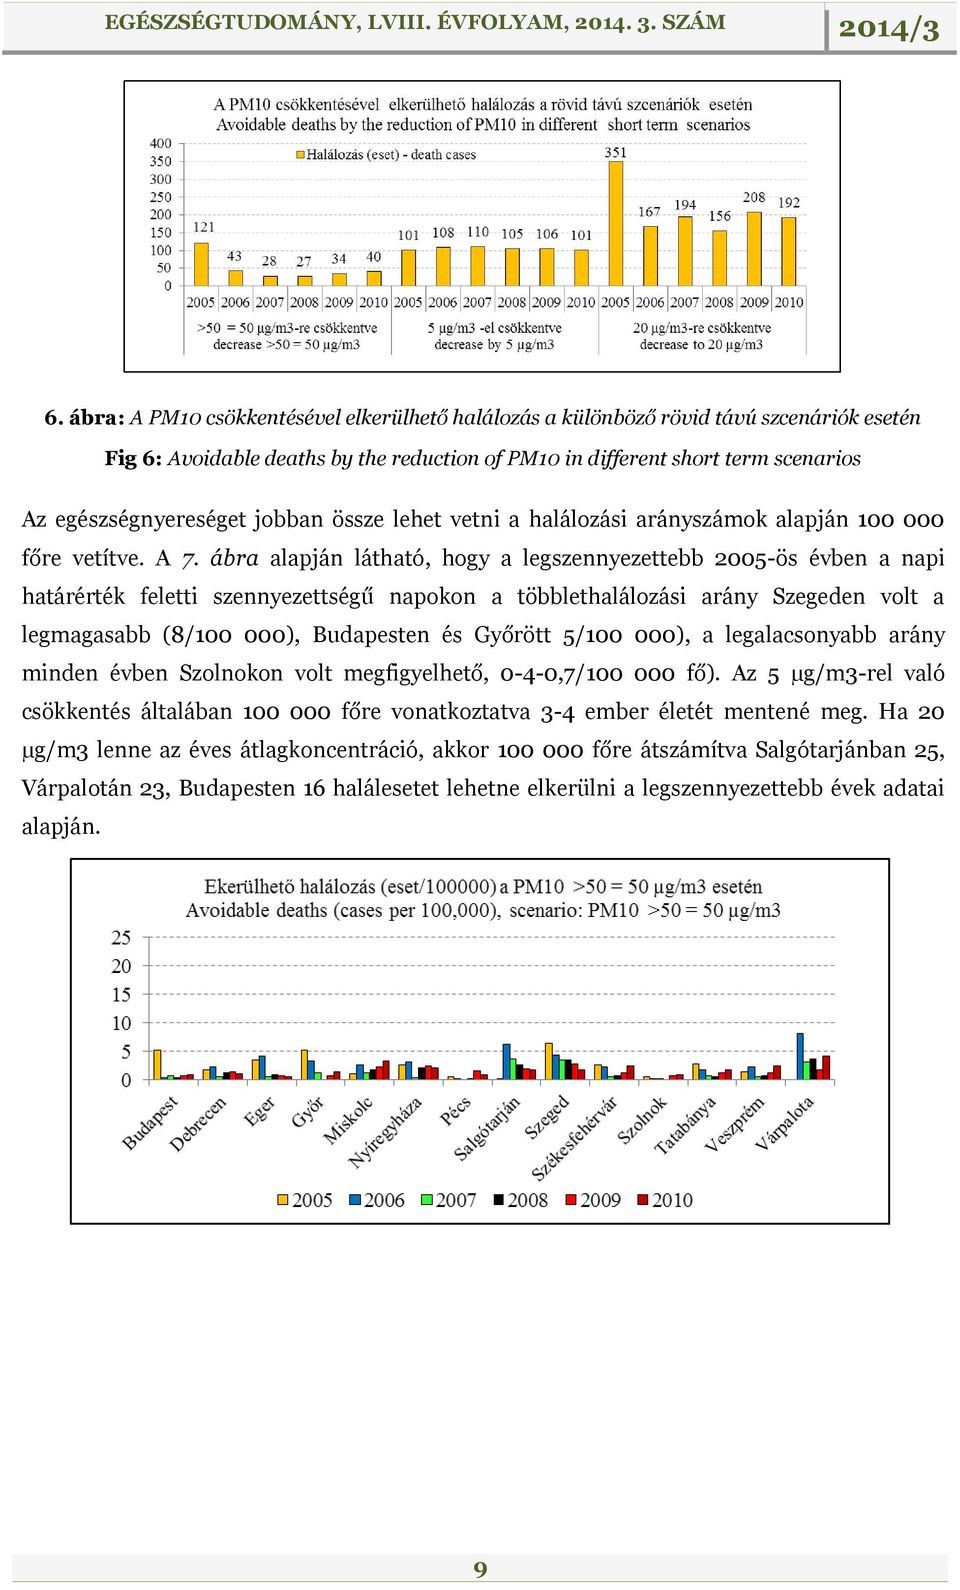 ábra alapján látható, hogy a legszennyezettebb 2005-ös évben a napi határérték feletti szennyezettségű napokon a többlethalálozási arány Szegeden volt a legmagasabb (8/100 000), Budapesten és Győrött